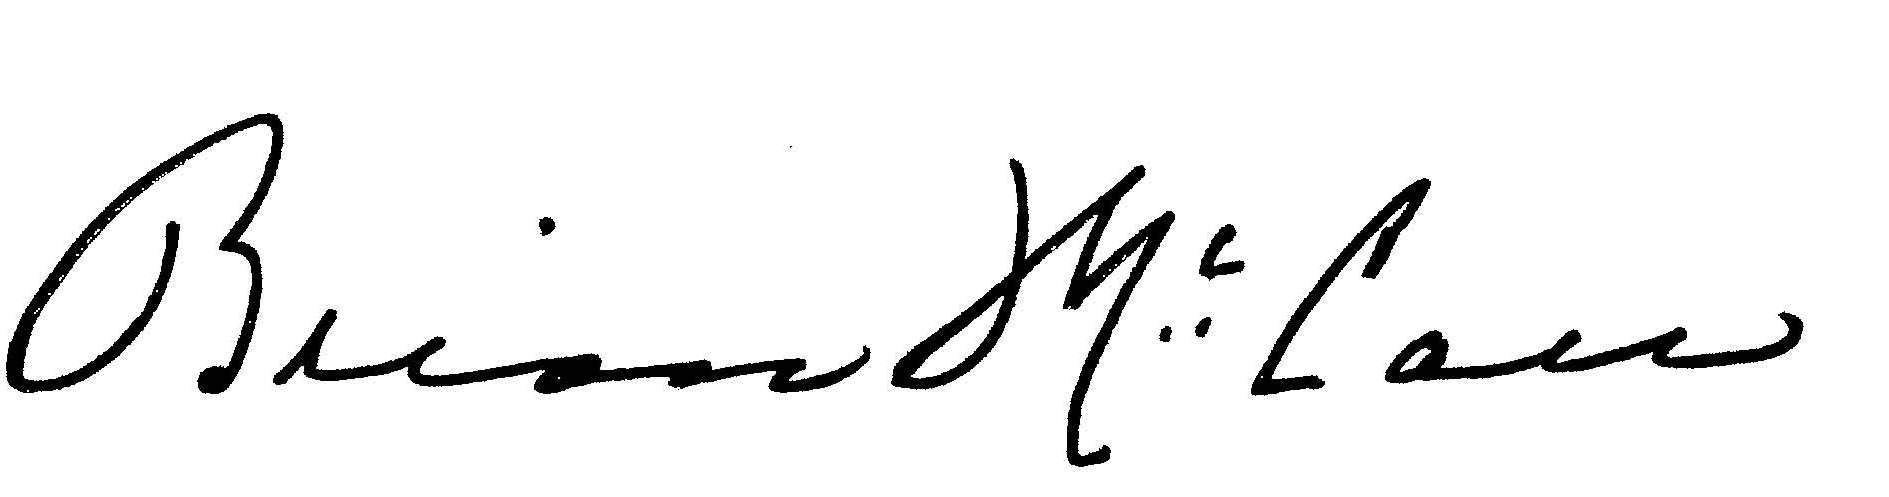 mccall signature